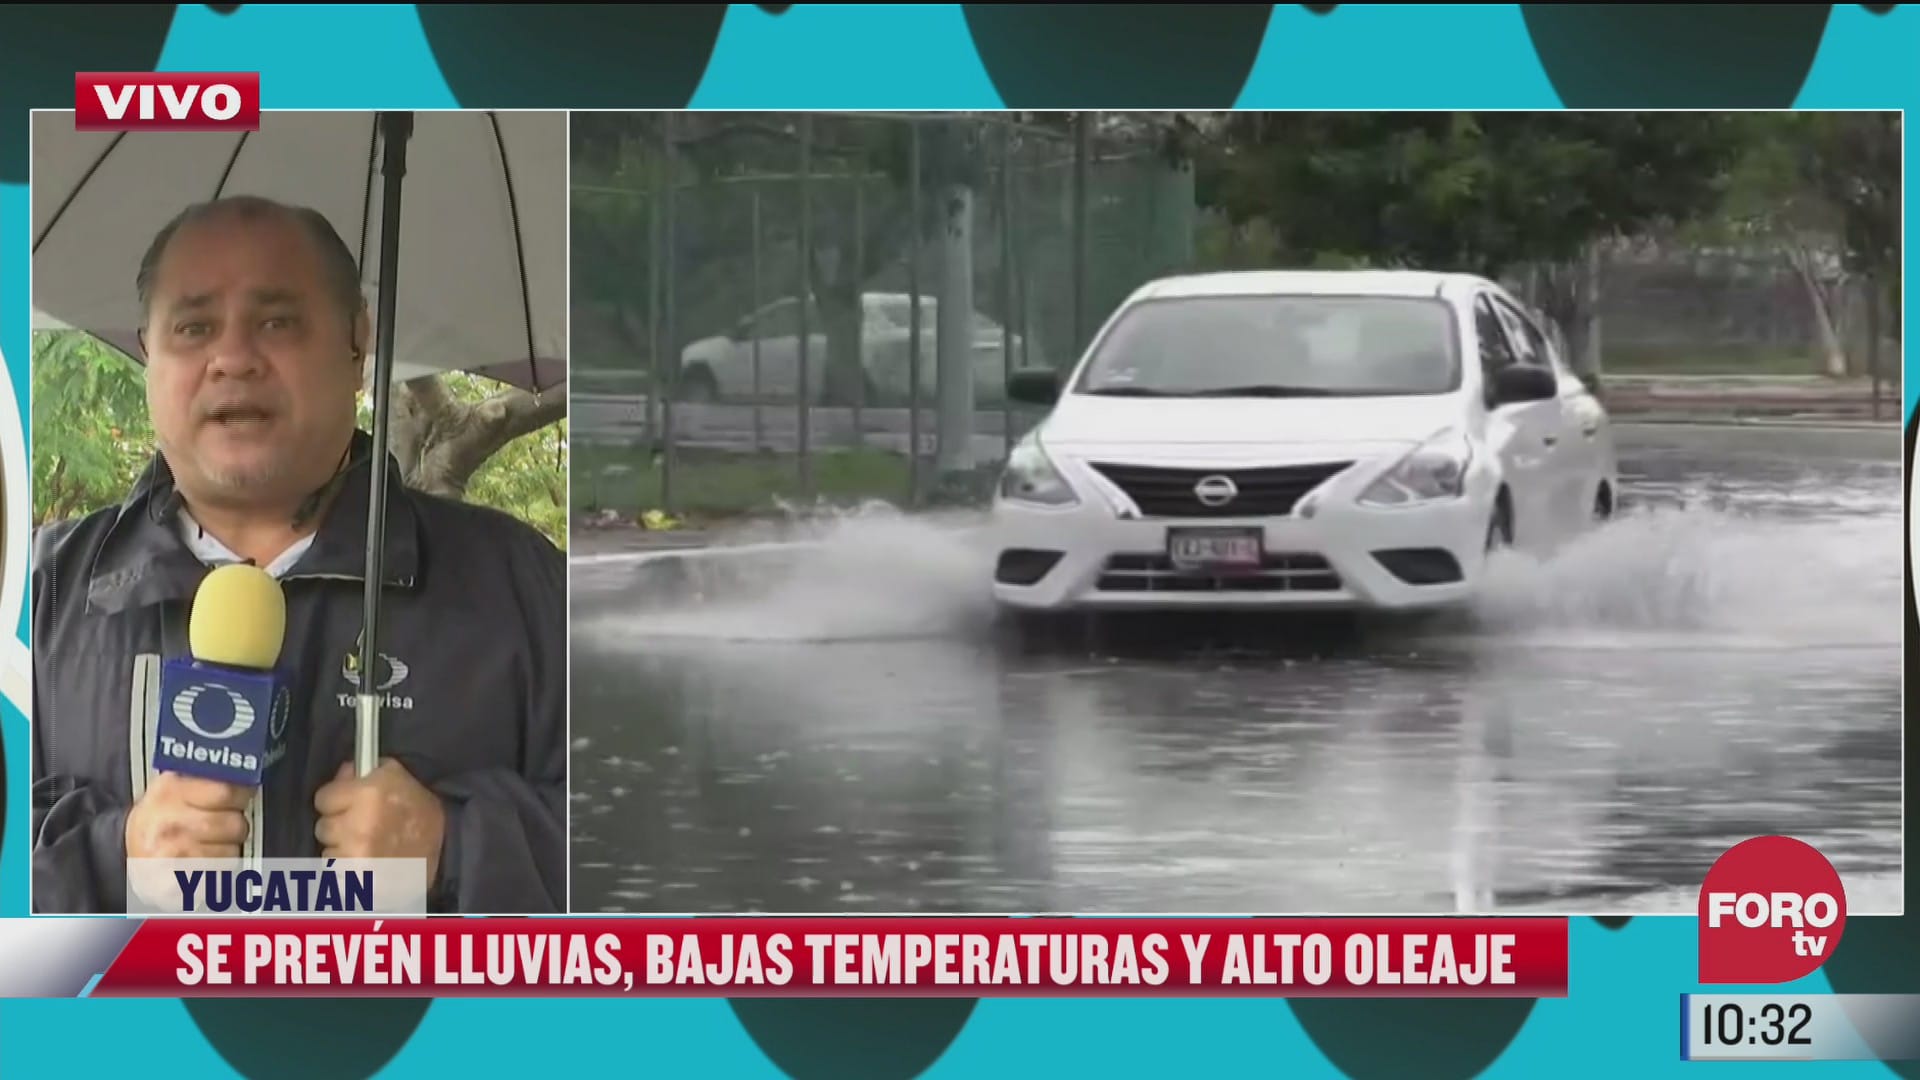 preven lluvias bajas temperaturas y alto oleaje en yucatan